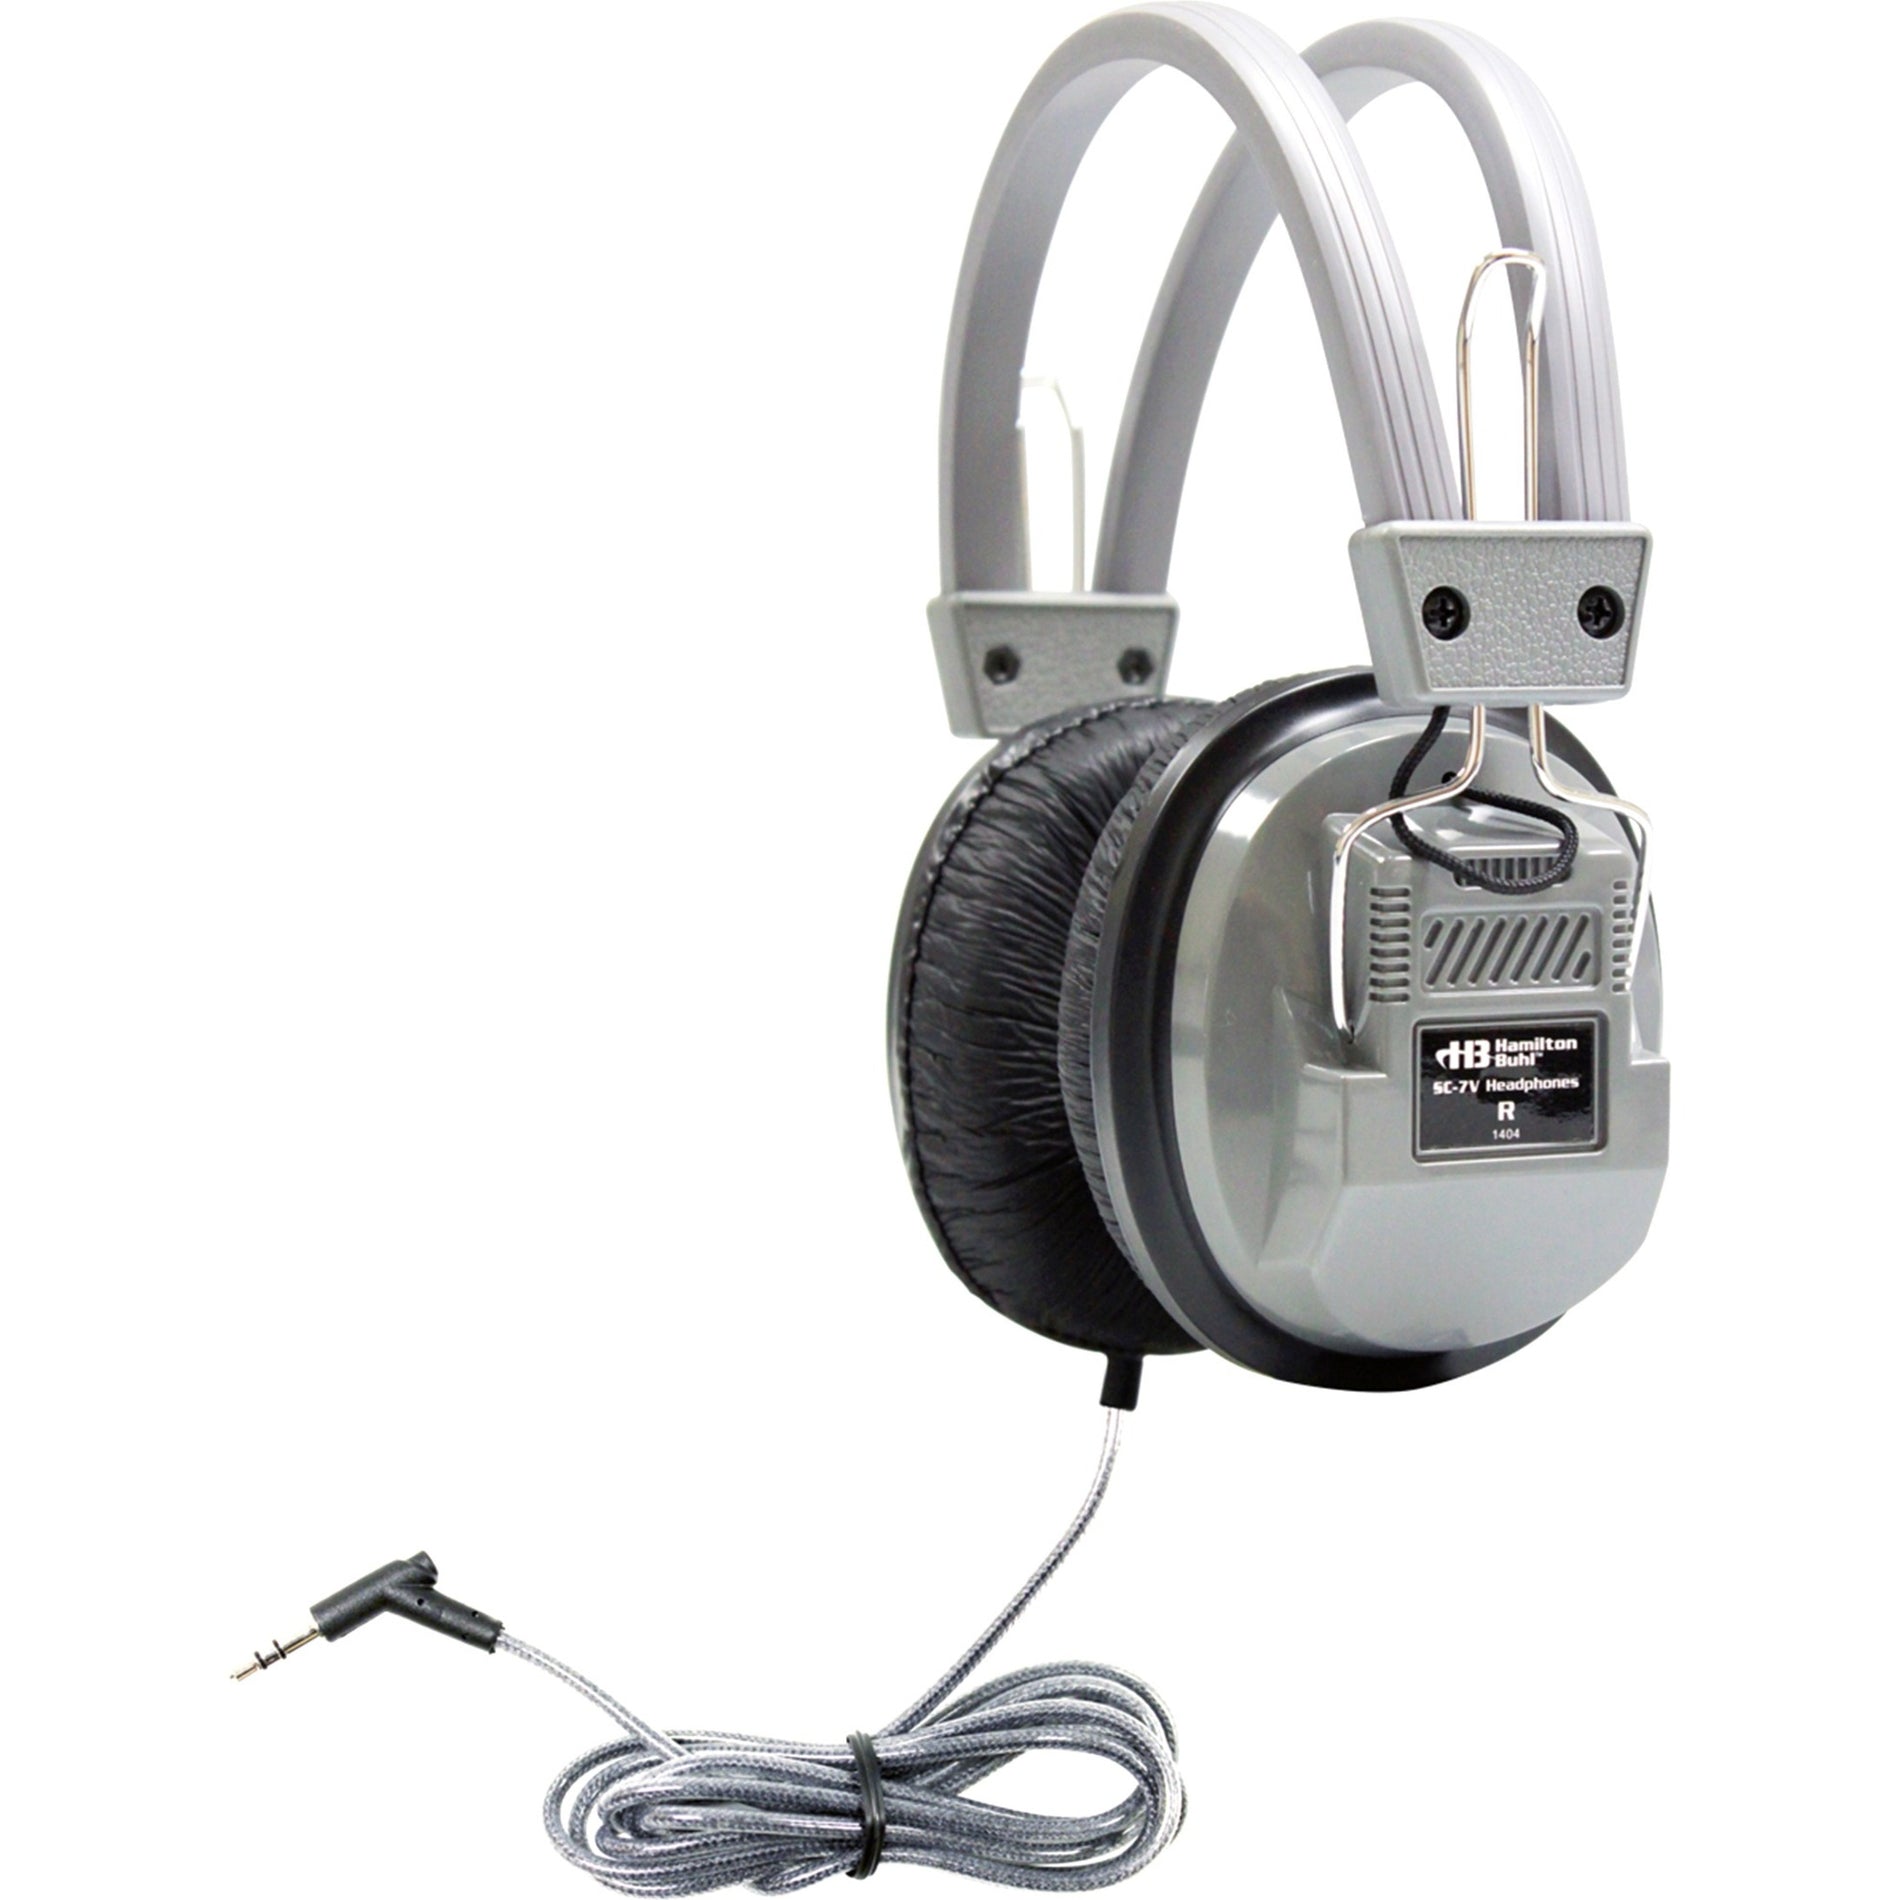 Hamilton Buhl SC-7V SchoolMate Deluxe Auriculares Estéreo con 3.5mm y Volumen Auriculares Over-Ear con Aislamiento de Ruido Cable sin Enredos y Diseño Robusto.